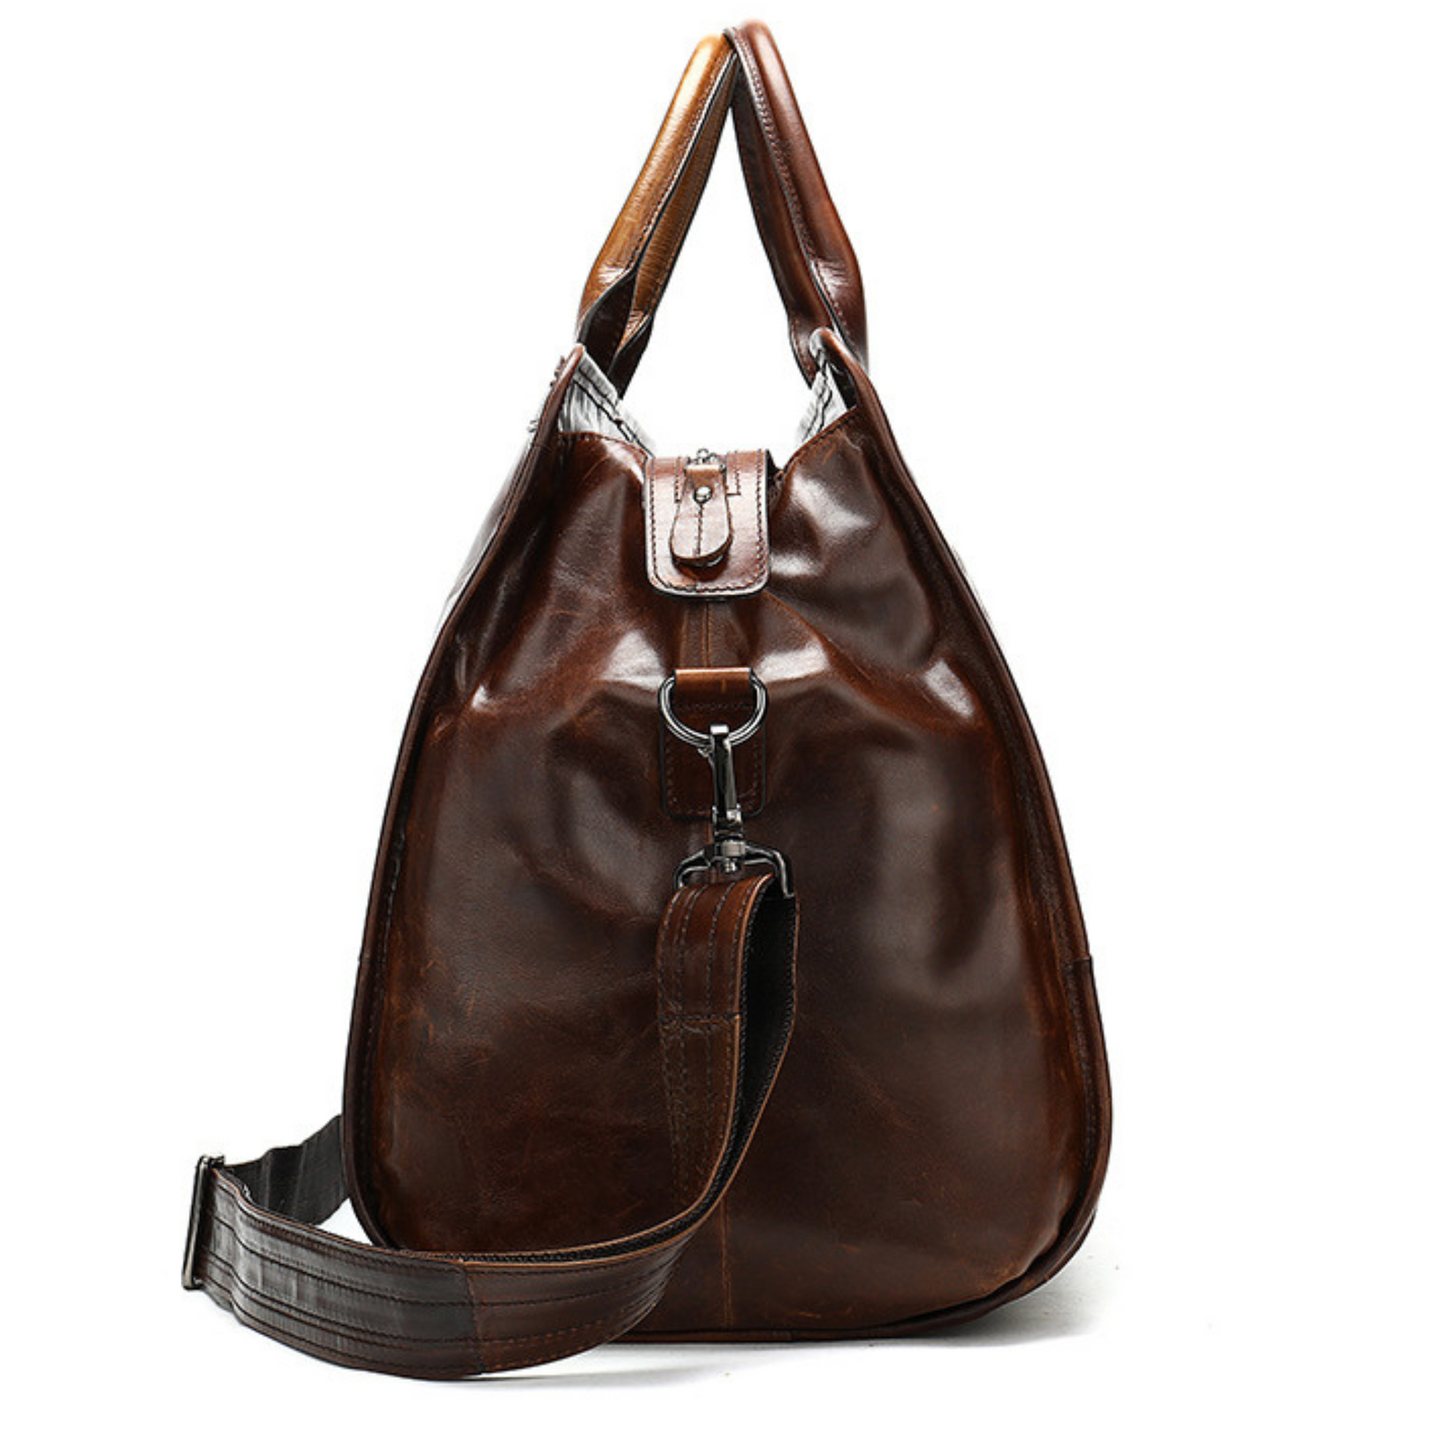 Ultimate Top Grain Genuine Leather Duffle Bags Travel Work Designer Cross Body Bag